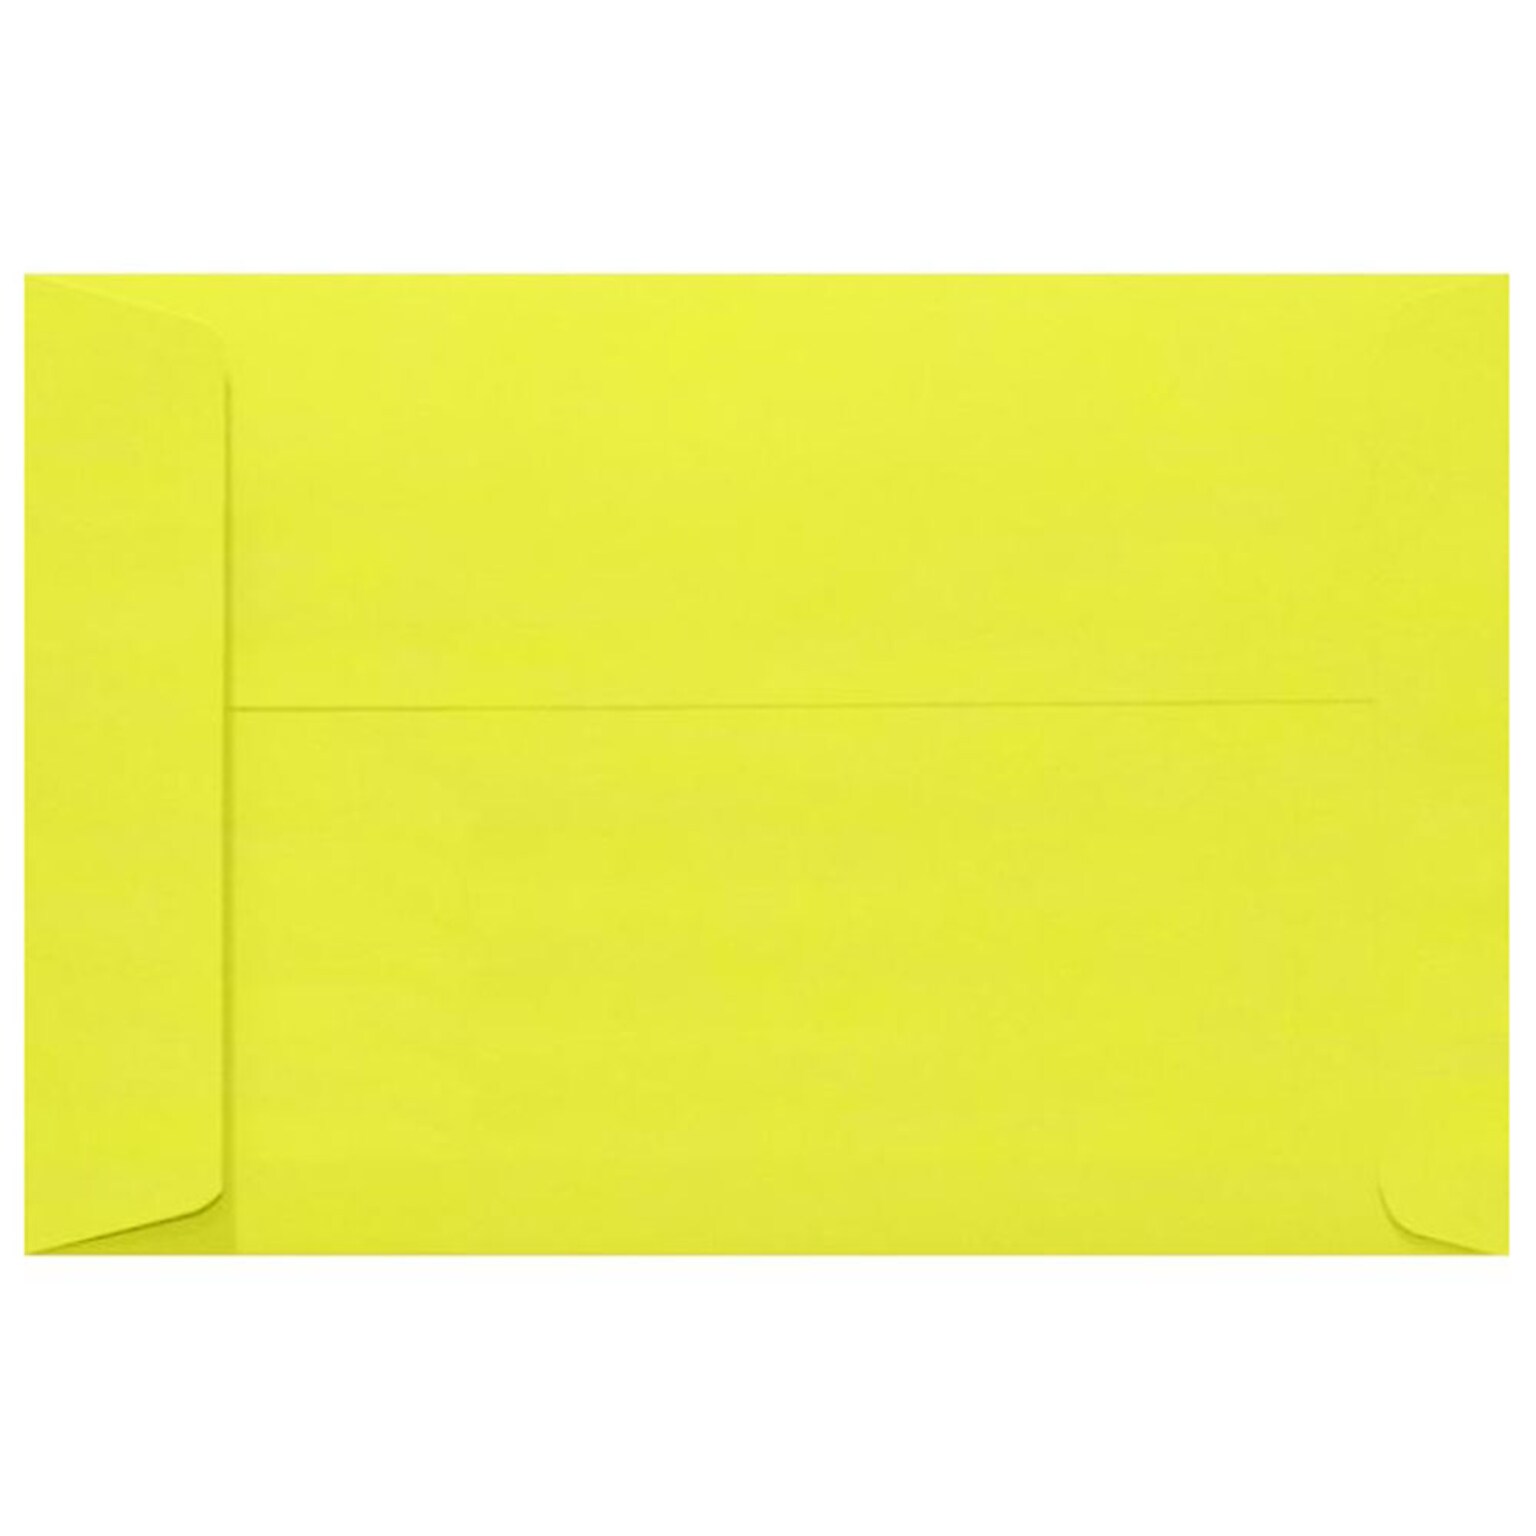 JAM Paper 10 x 13 Open End Envelopes, Citrus Yellow, 50/Pack (LUX-4897-L20-50)